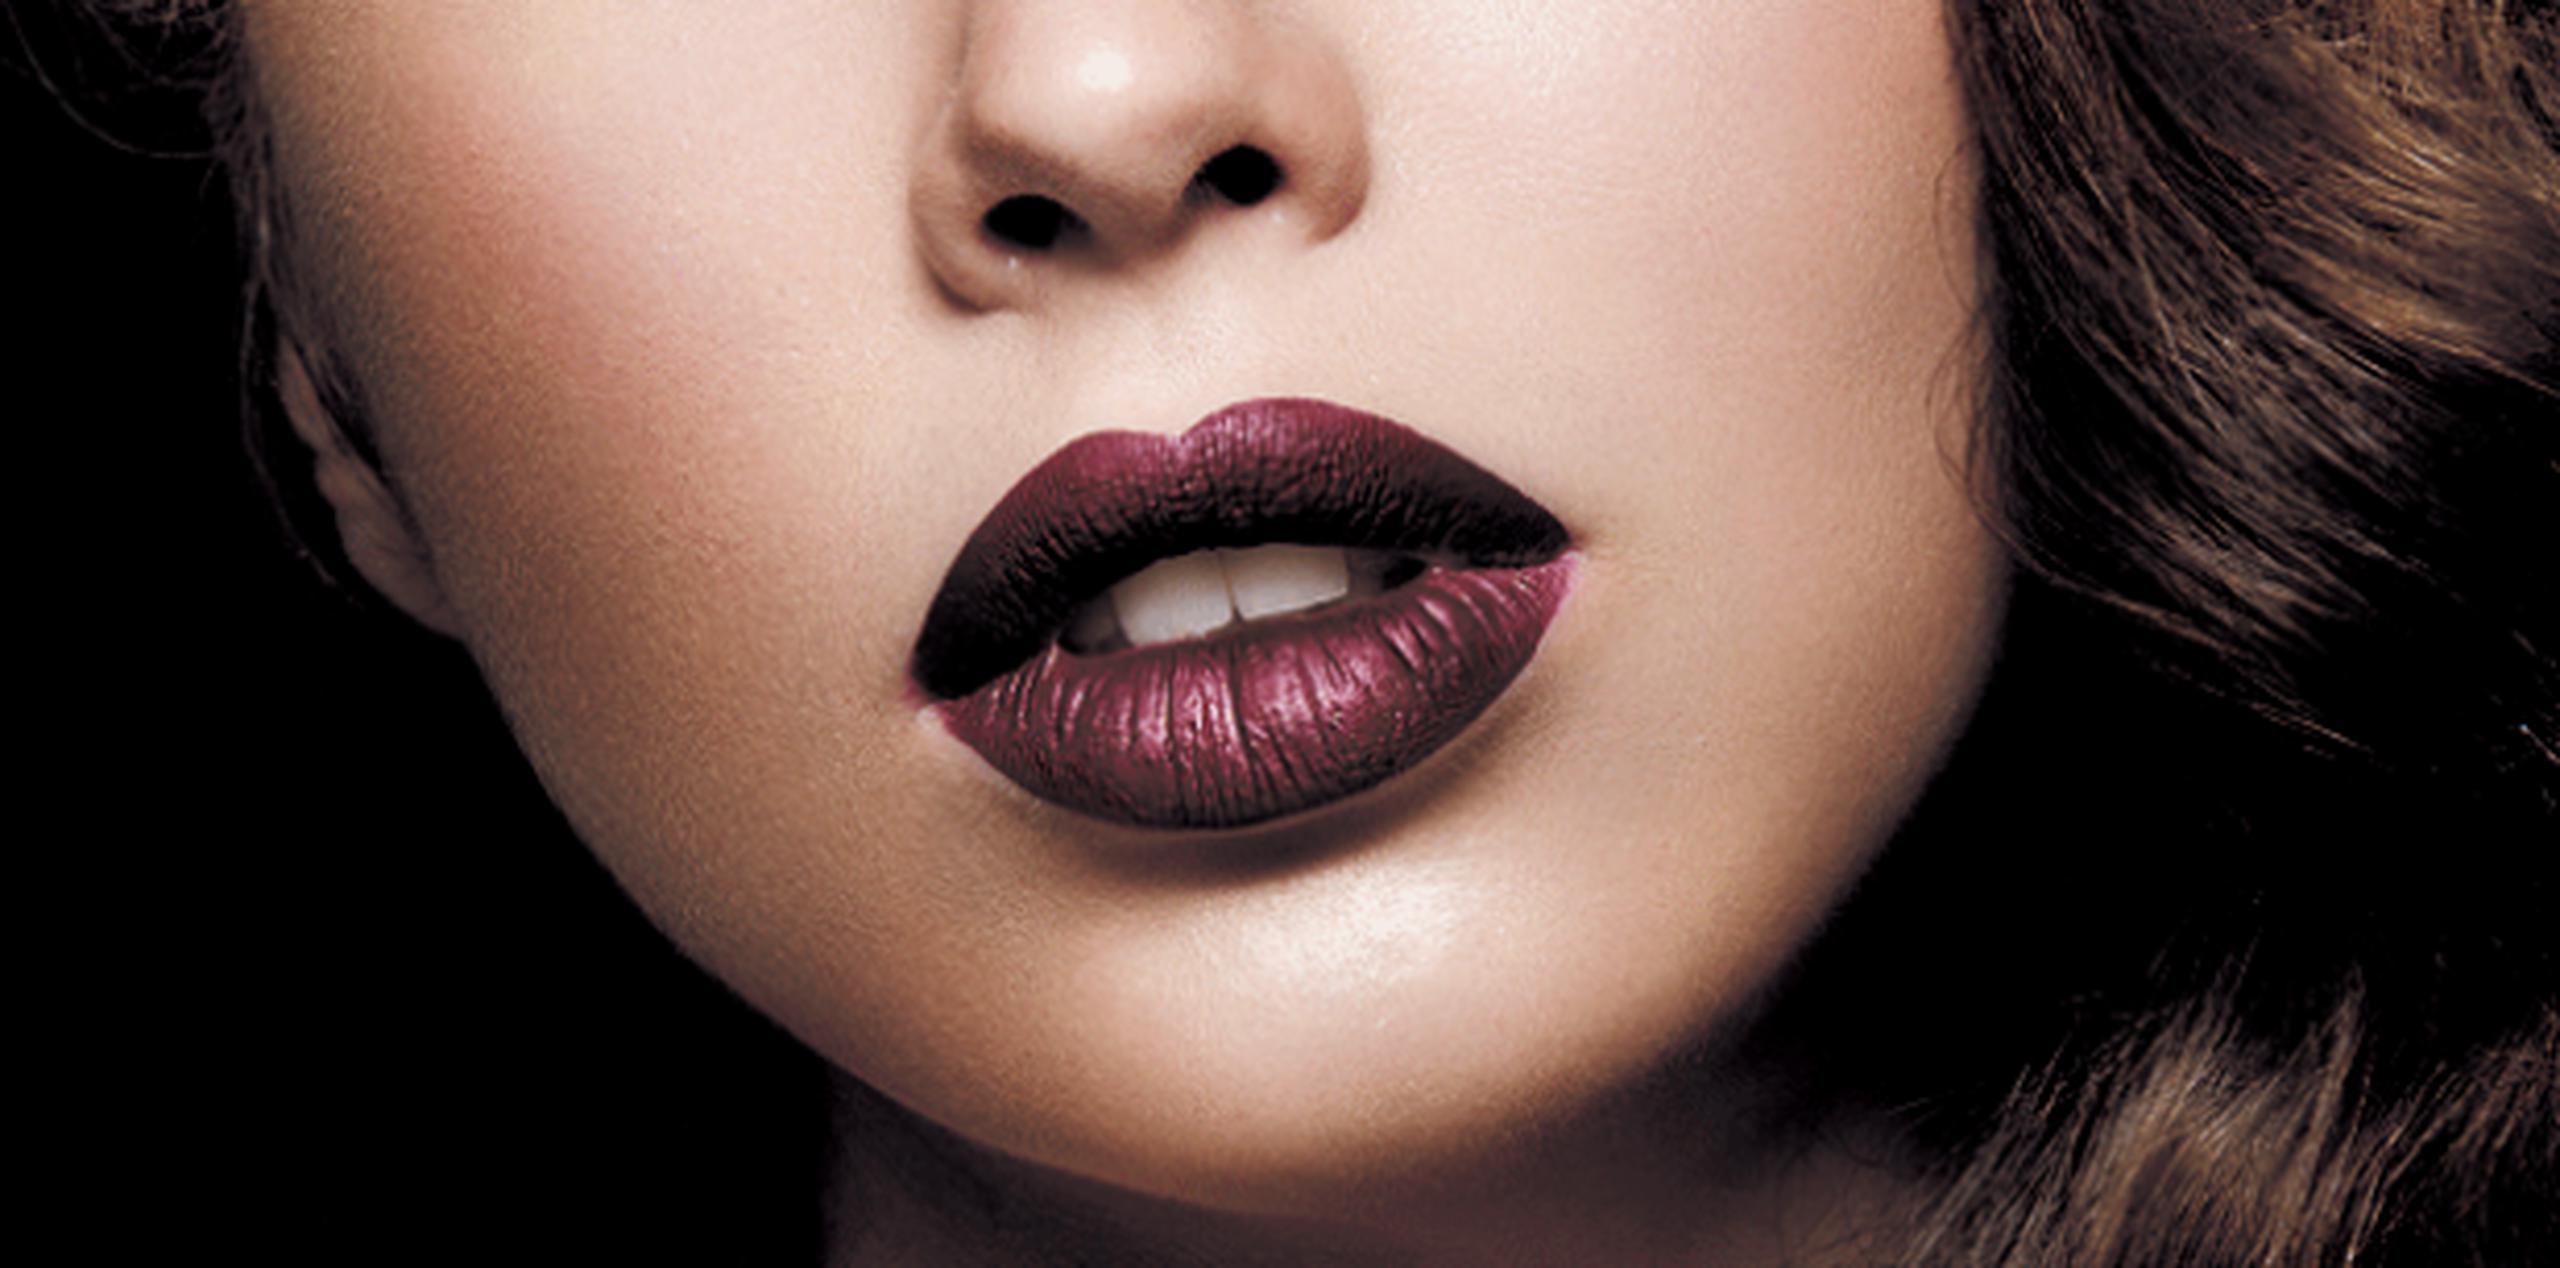 Los tonos oscuros se utilizan casi siempre en fórmula mate o semimate y eso deja al descubierto si los labios están resecos o descuidados. (Archivo)